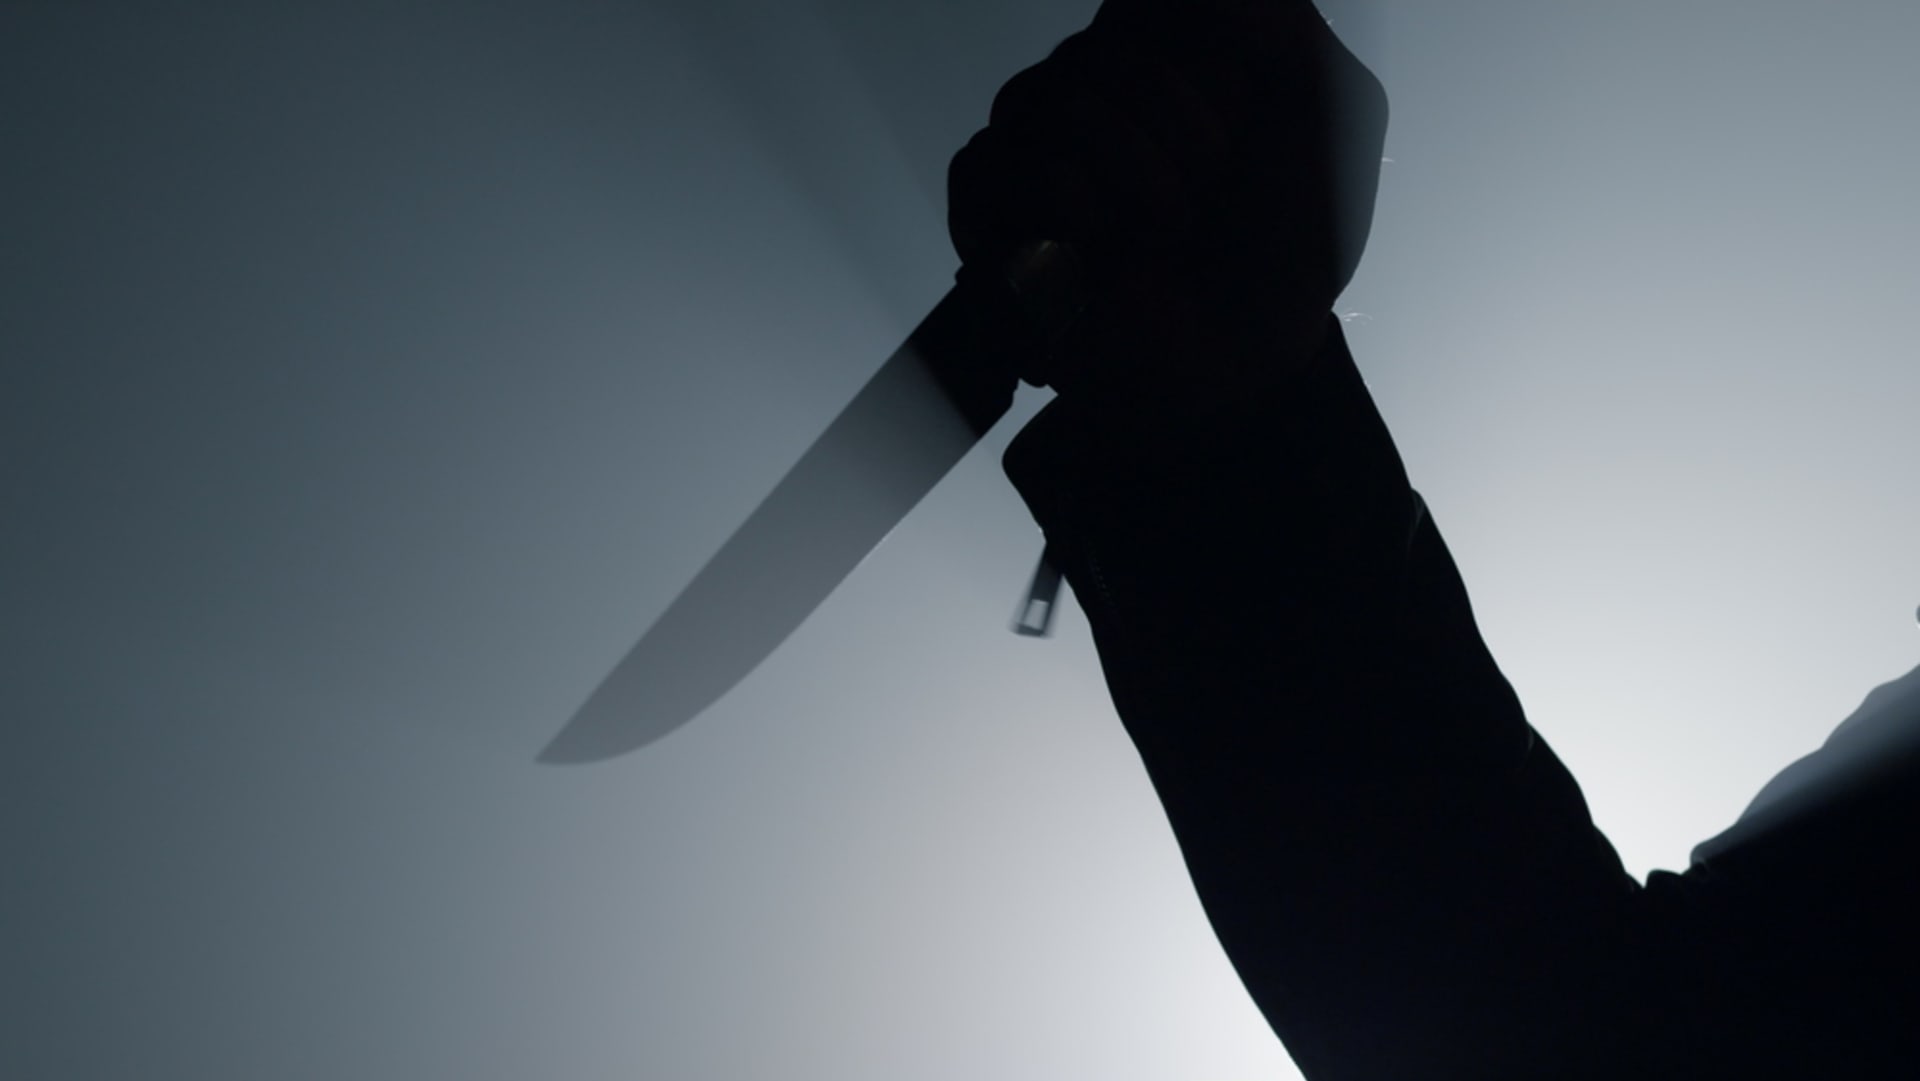 Útok nožem (ilustrační snímek)